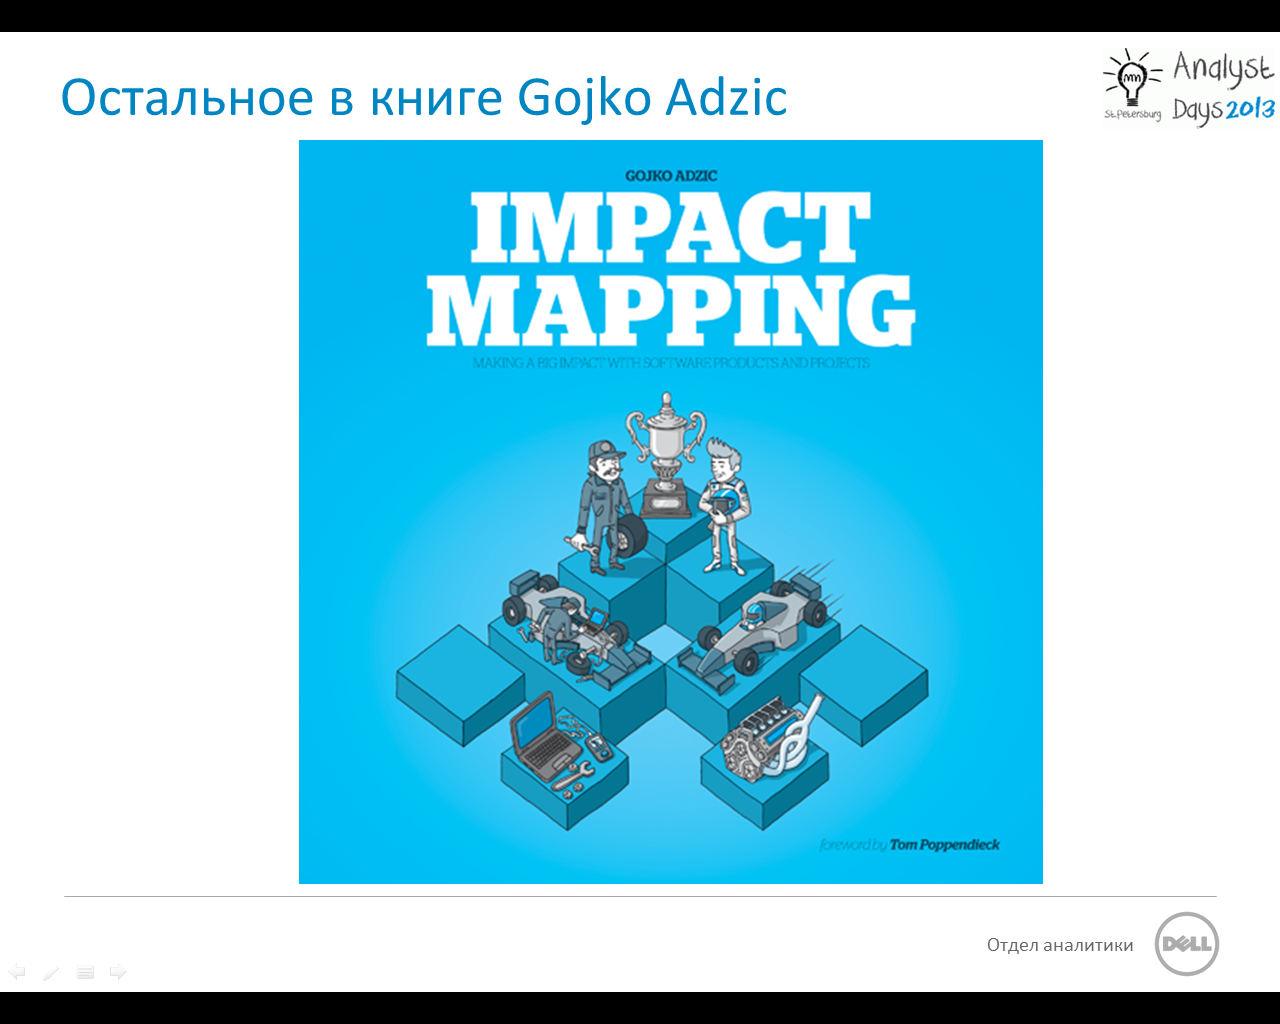 Impact Mapping — как dev команде перестать делать то, что требуют, и начать делать то, что нужно?